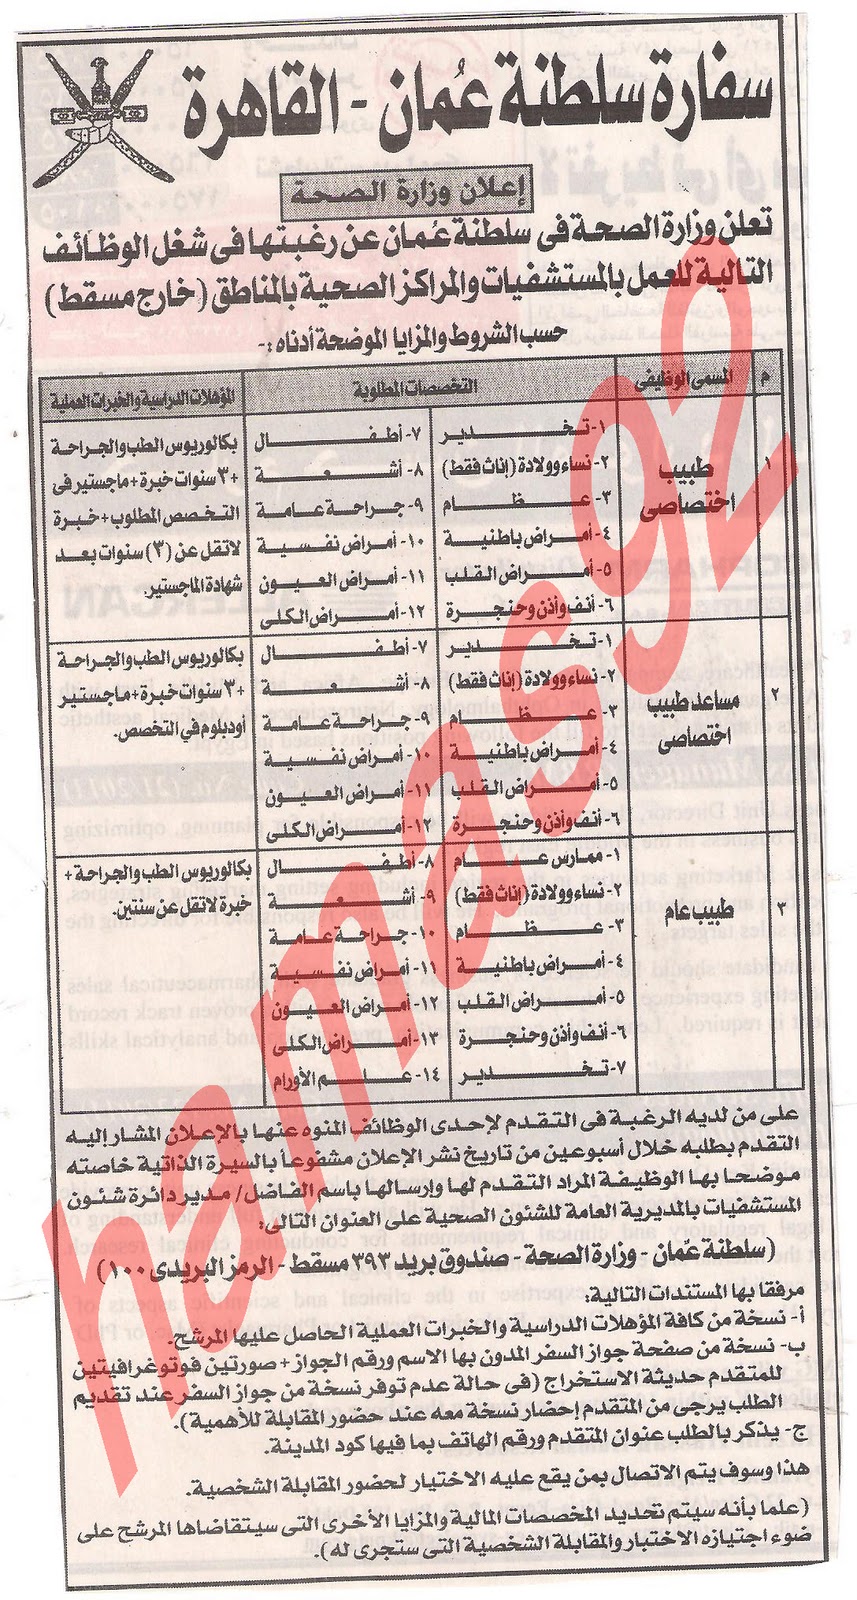 وظائف خالية فى سفارة سلطنة عمان بالقاهرة , وزارة الصحة العمانية  Picture+014